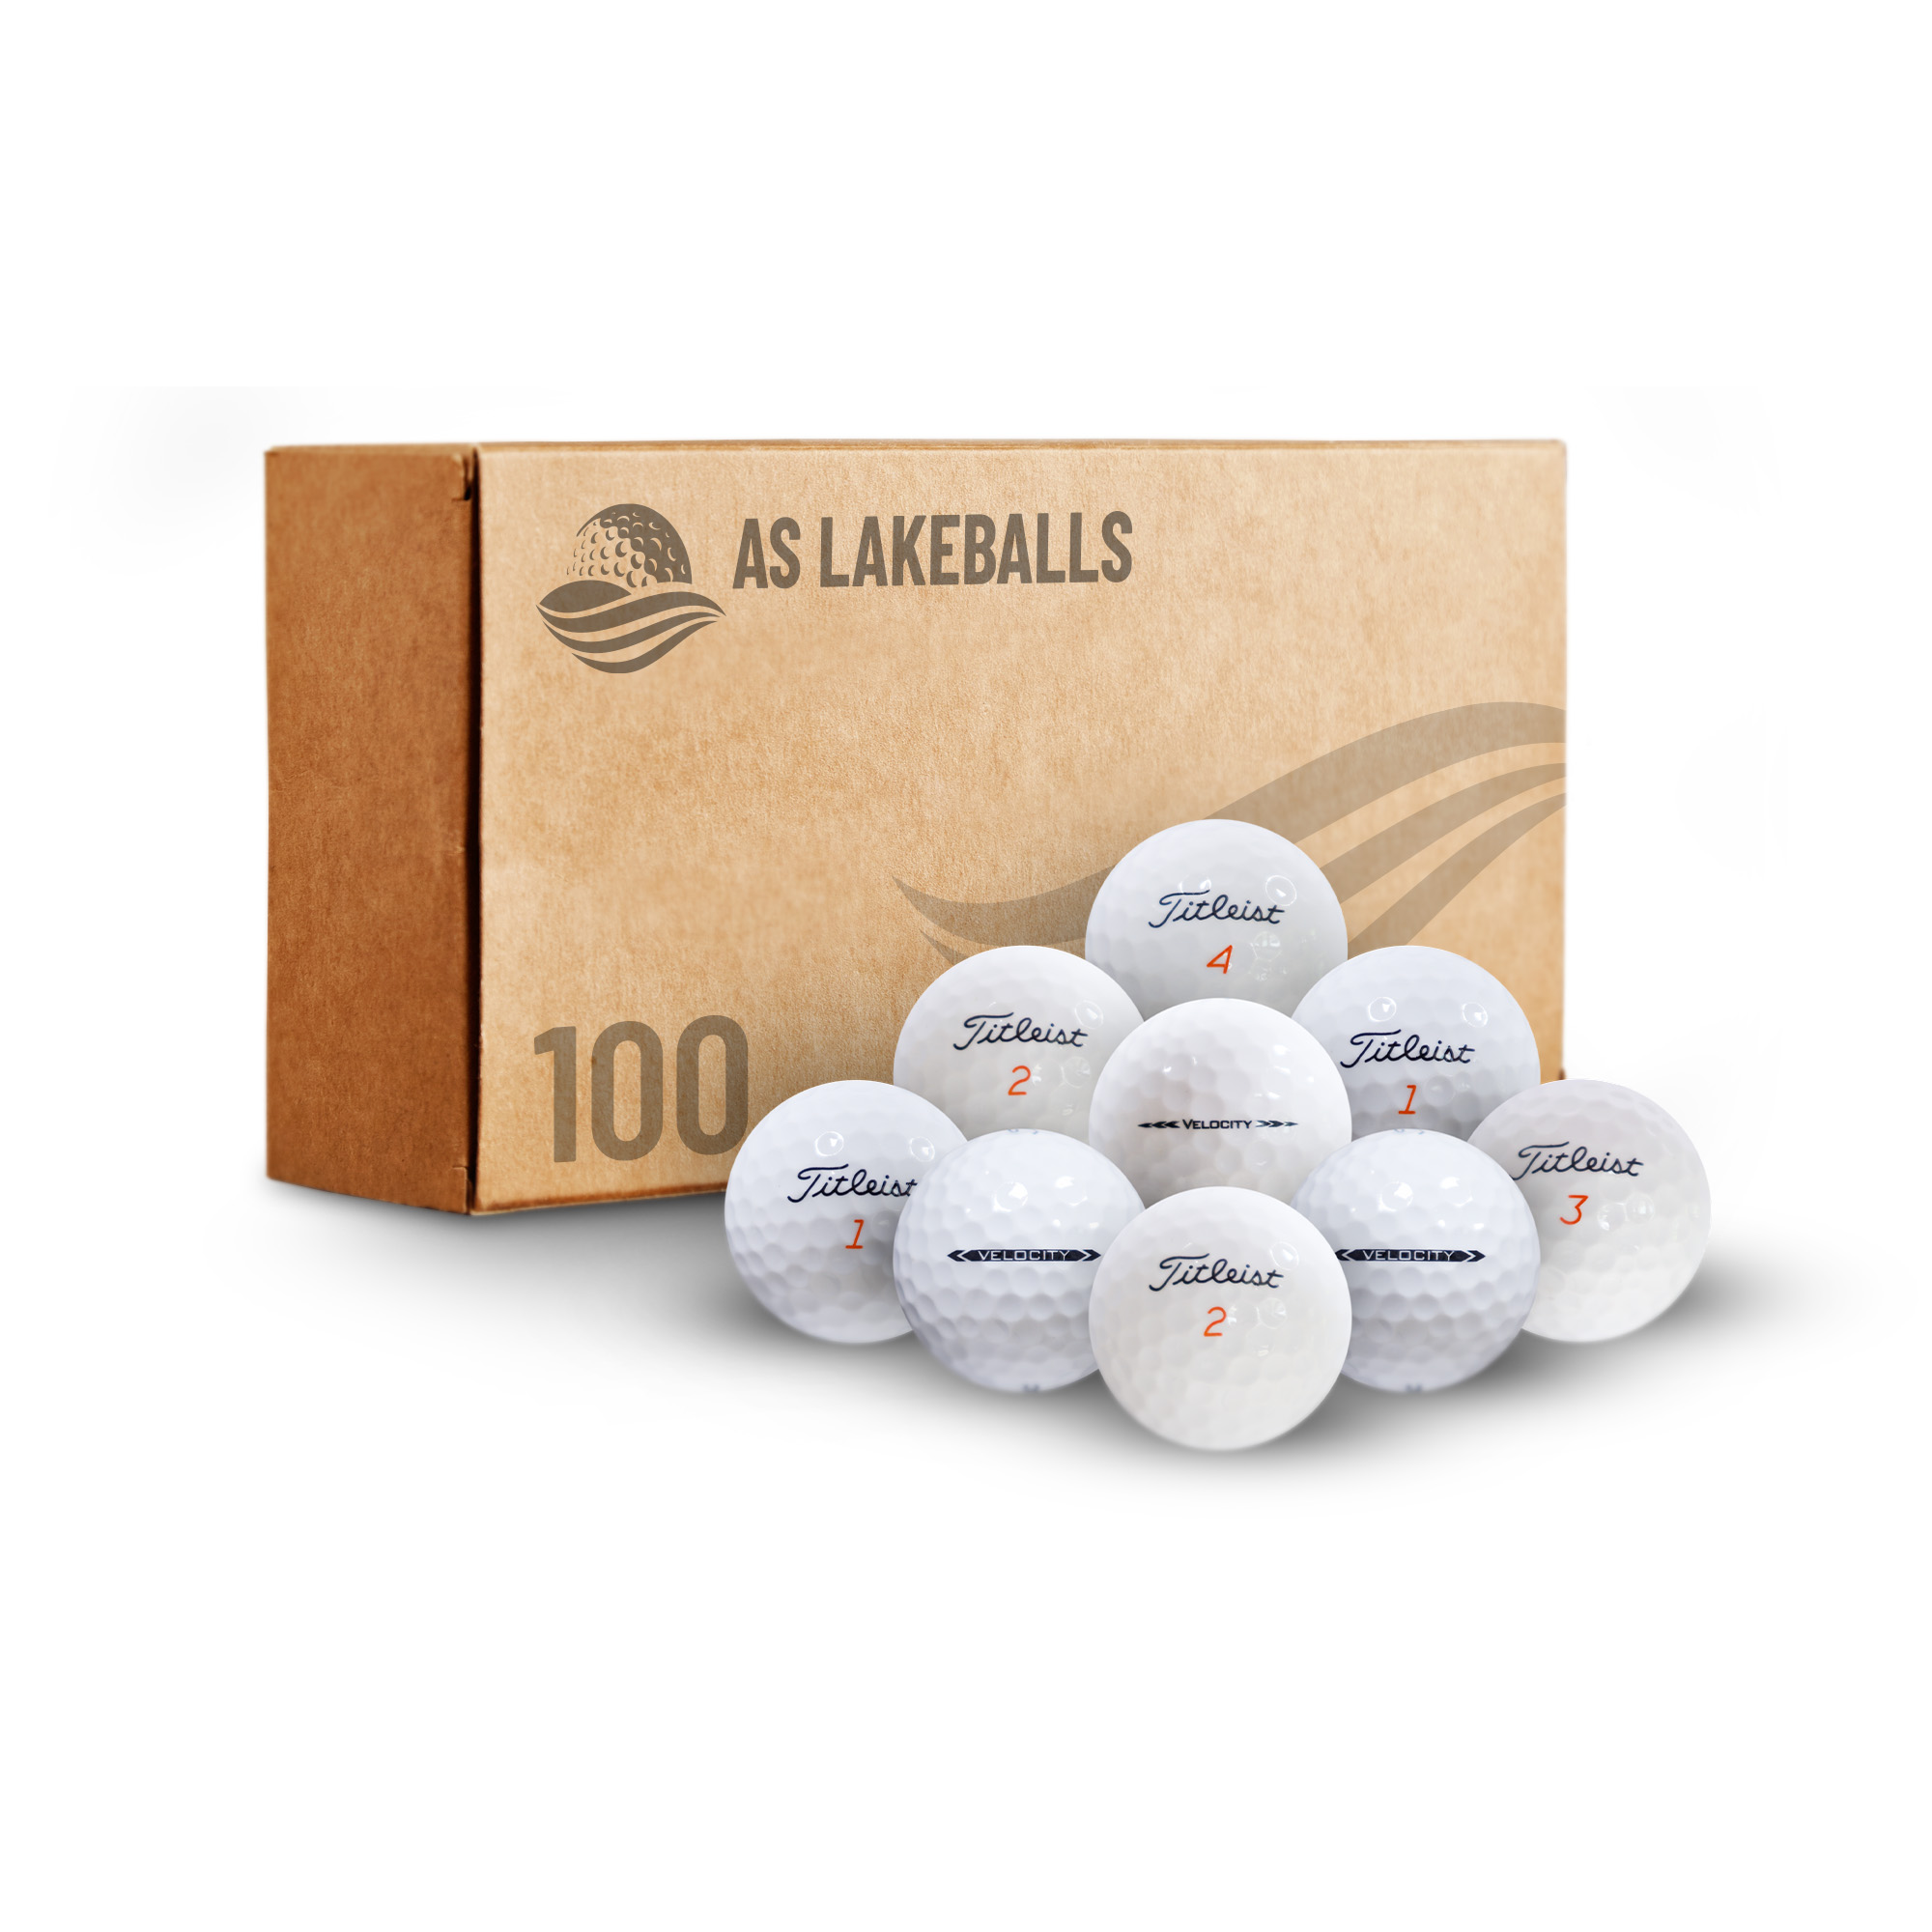 100 Stück Titleist Velocity AAA-AA Lakeballs bei AS Lakeballs günstig kaufen